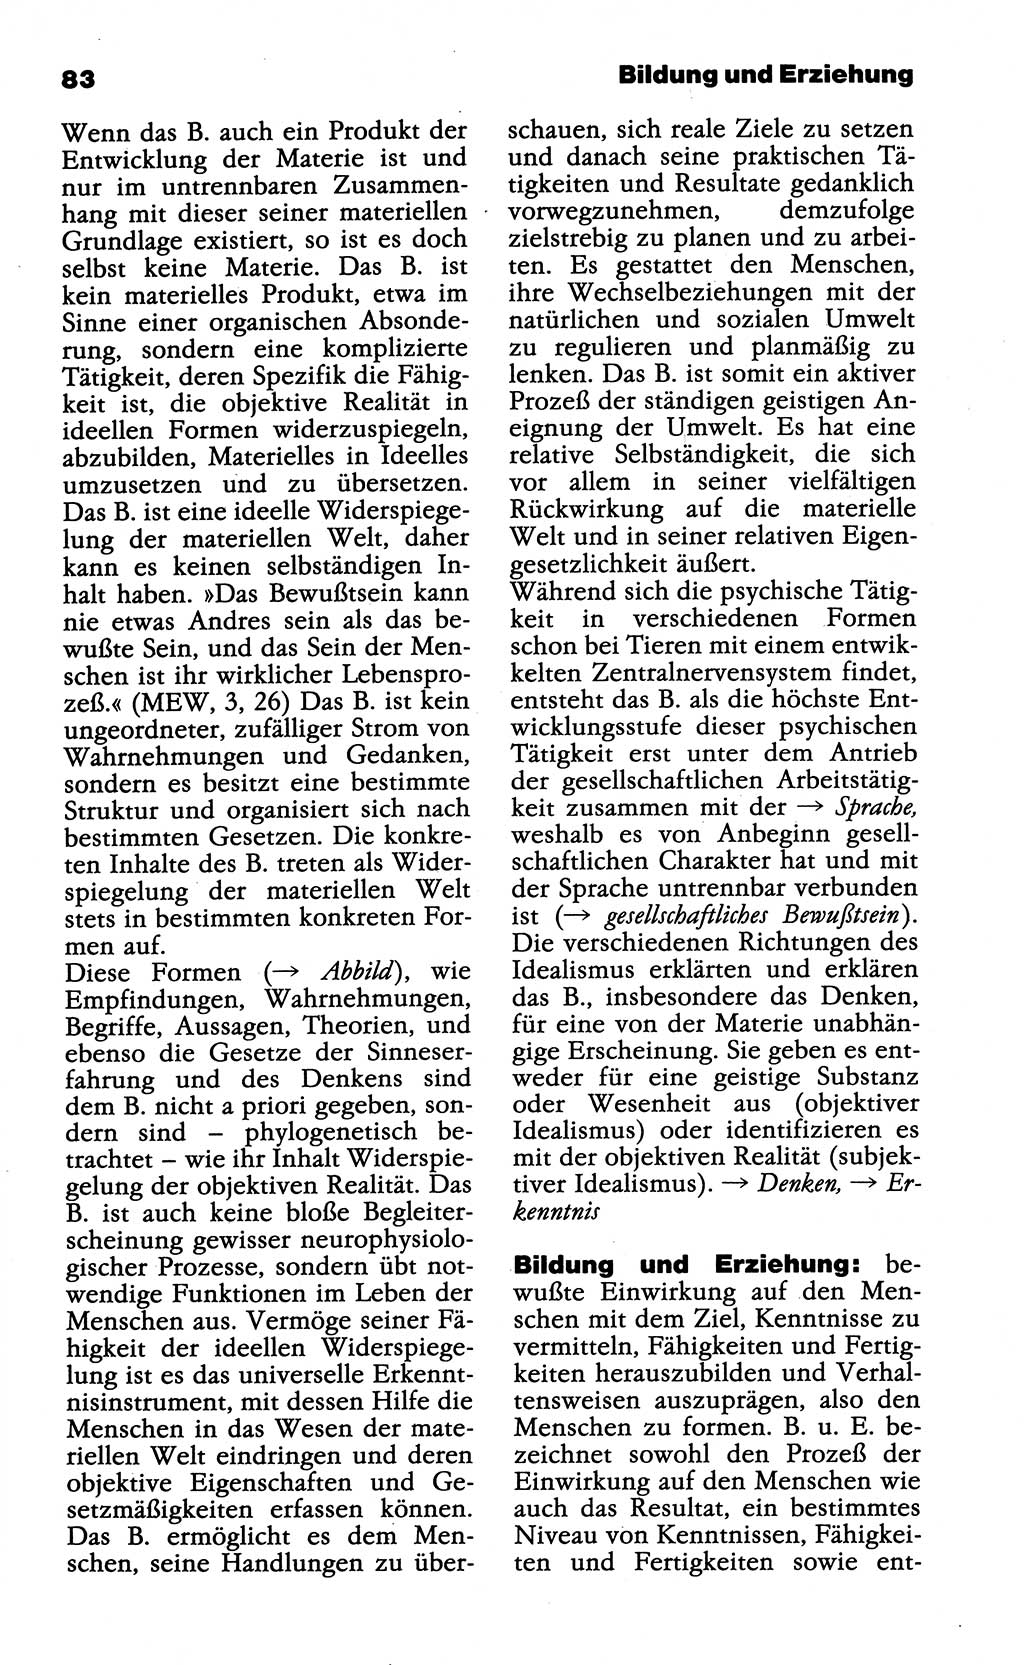 Wörterbuch der marxistisch-leninistischen Philosophie [Deutsche Demokratische Republik (DDR)] 1985, Seite 83 (Wb. ML Phil. DDR 1985, S. 83)